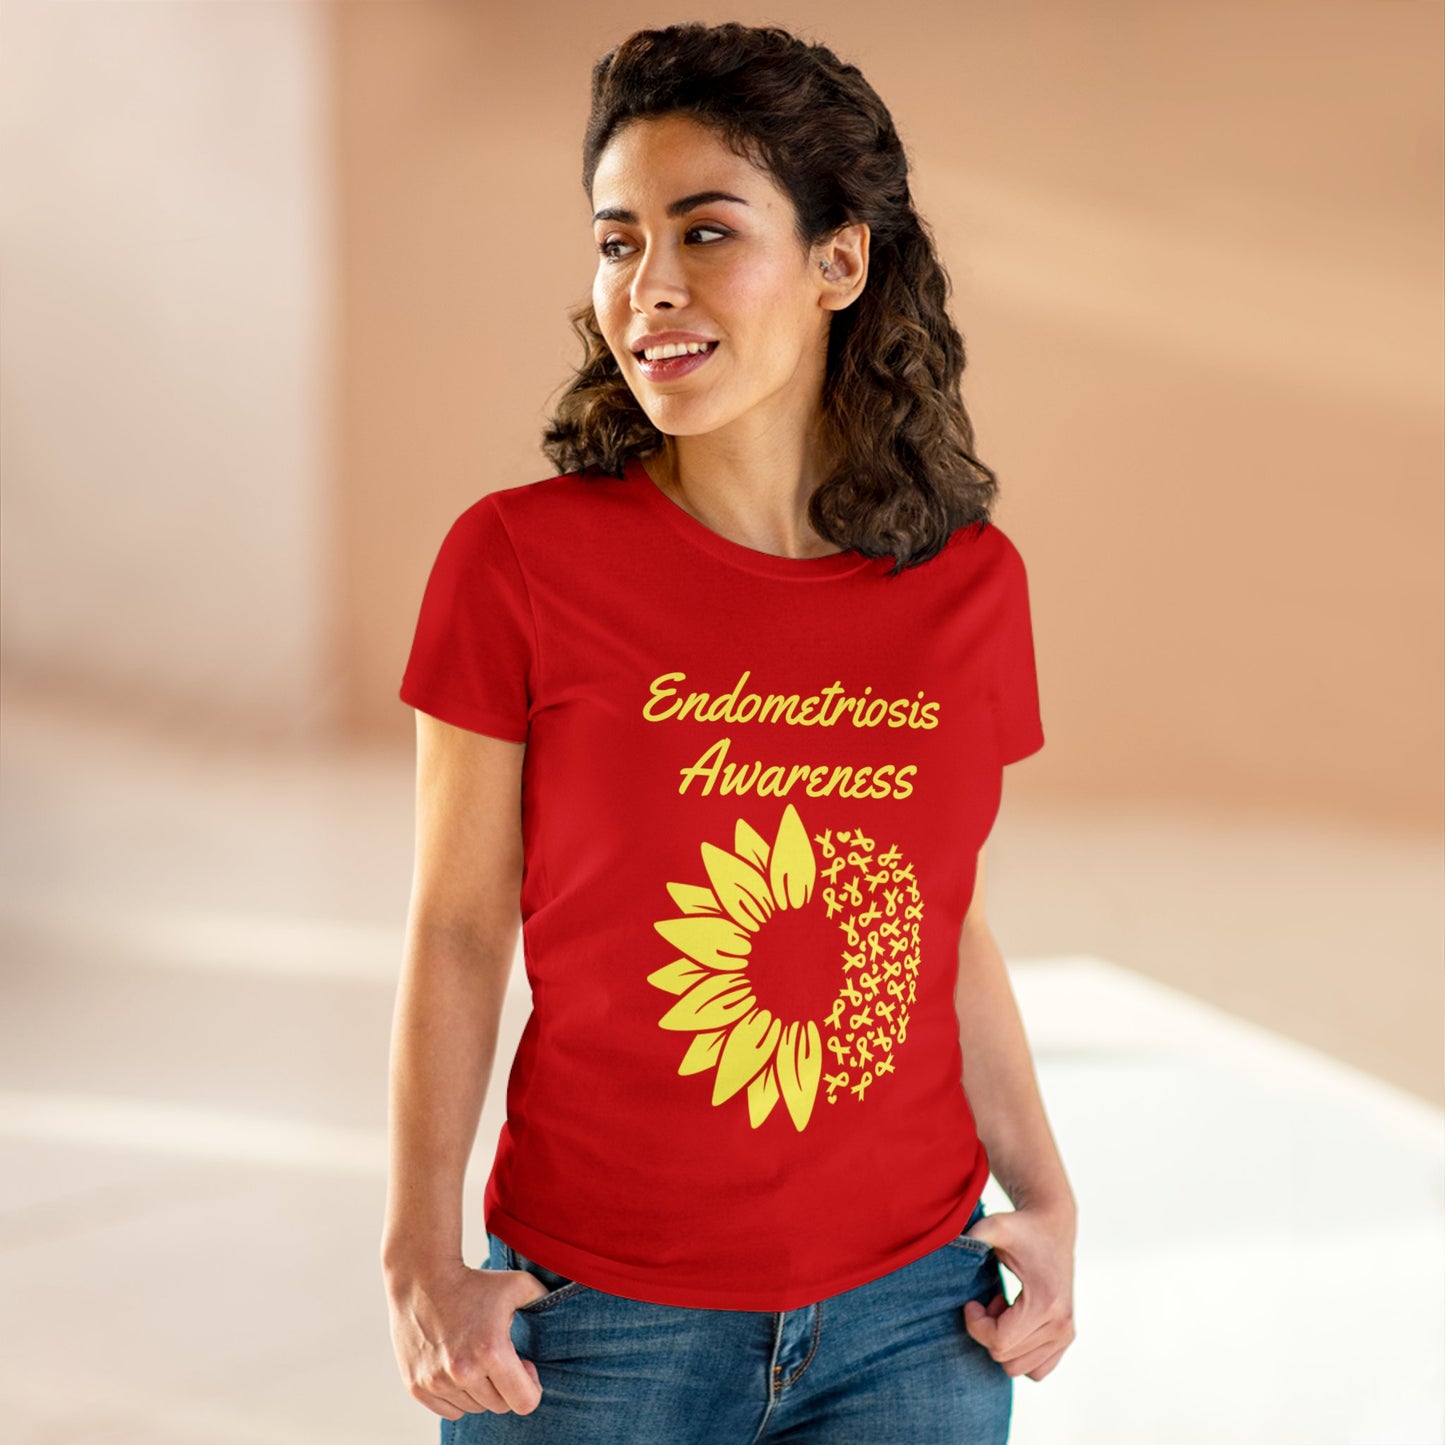 Endometriosis Awareness t-shirt